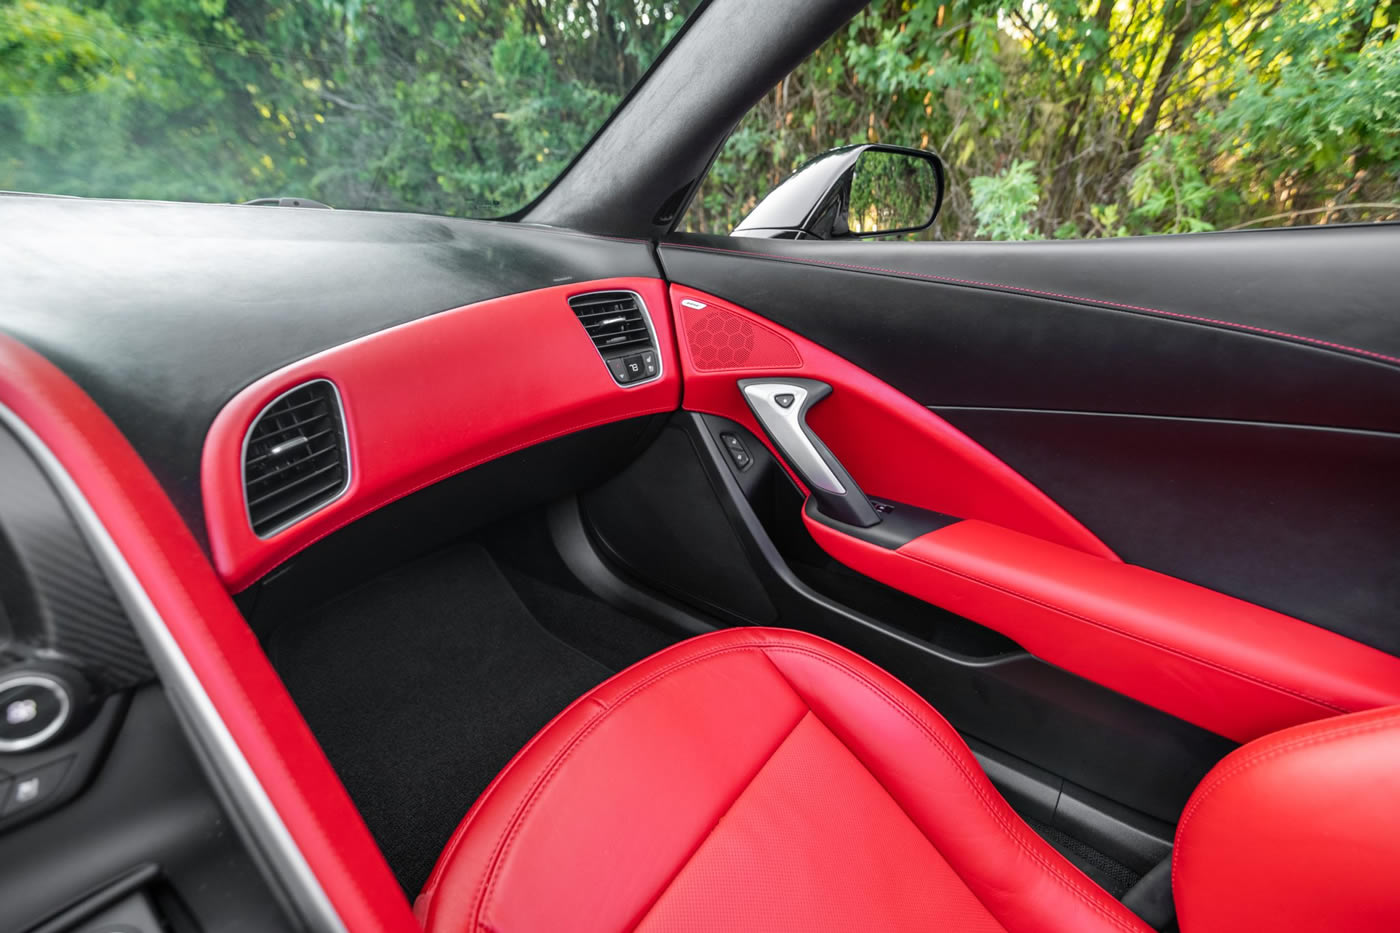 2015 Corvette Stingray Coupe in Black